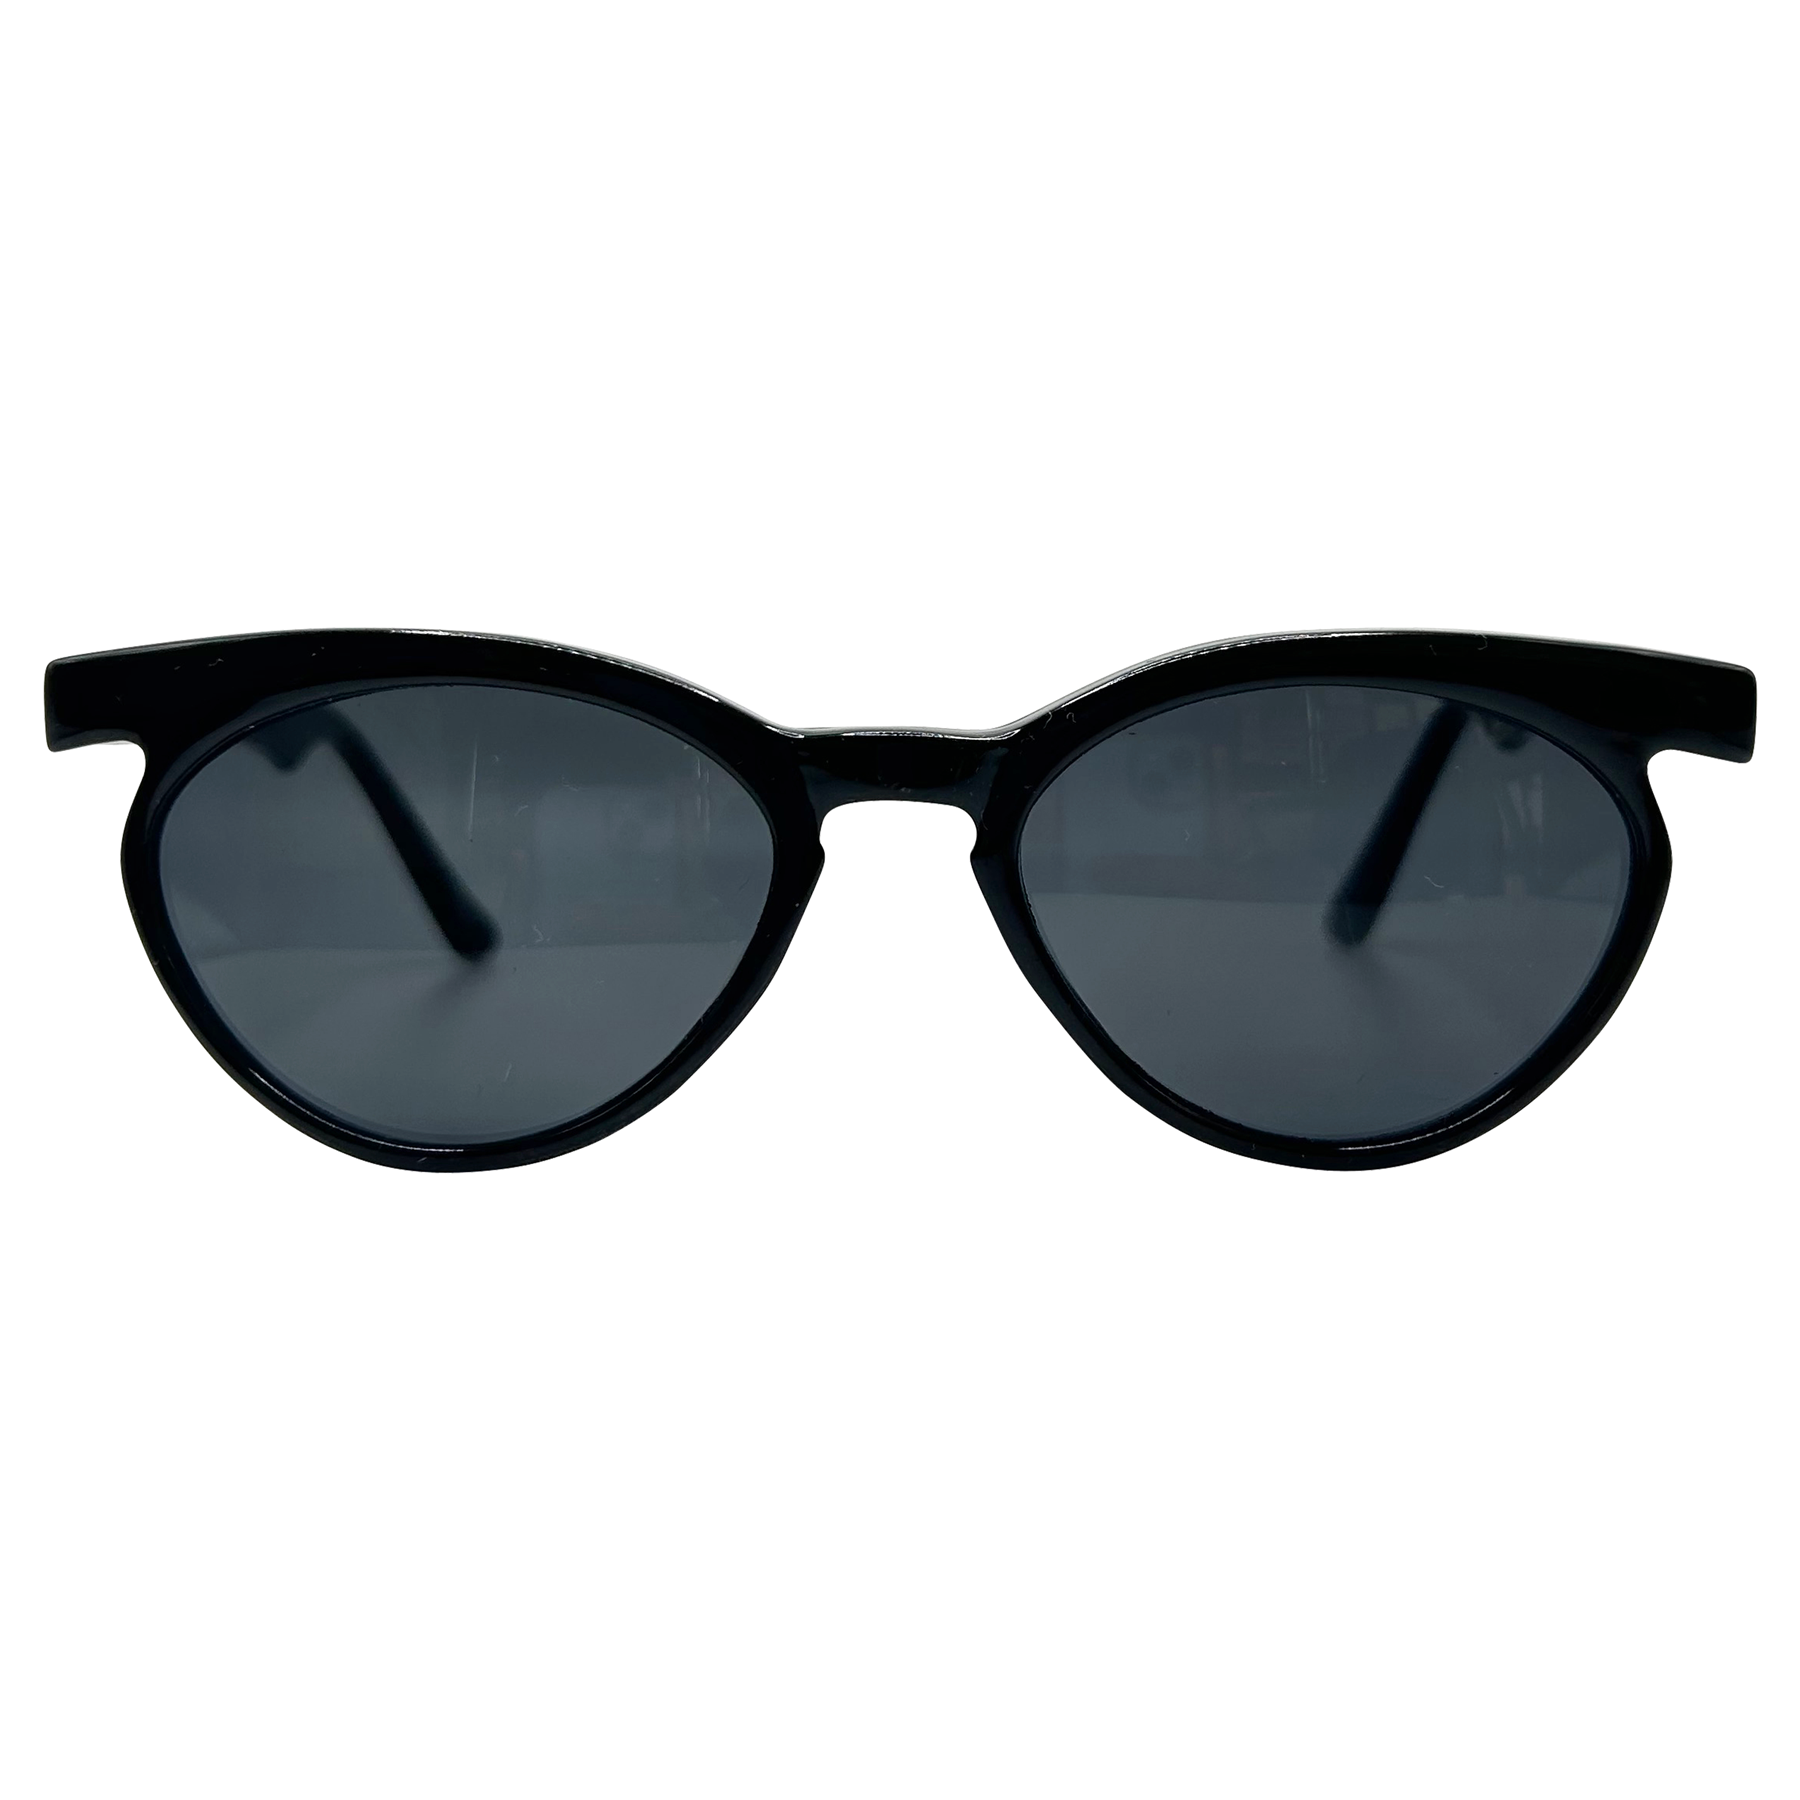 LASHETTE Mod Cat-Eye Sunglasses